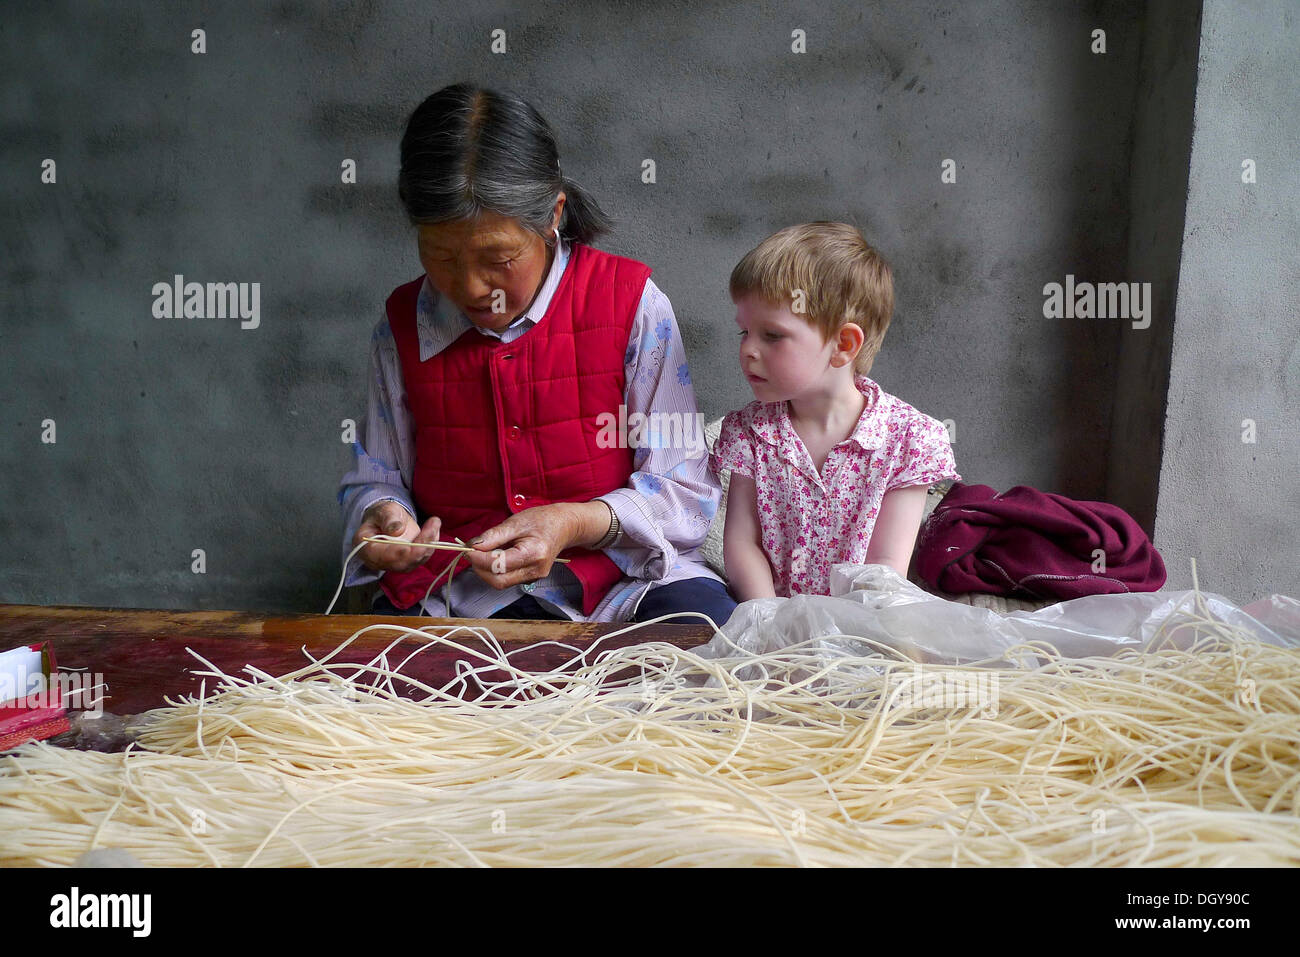 Incontra in Cina, giovane ragazza europea guarda su una vecchia donna cinese rendendo i bastoncini di incenso, Moxi, Hailuogou, Sichuan, in Cina Foto Stock